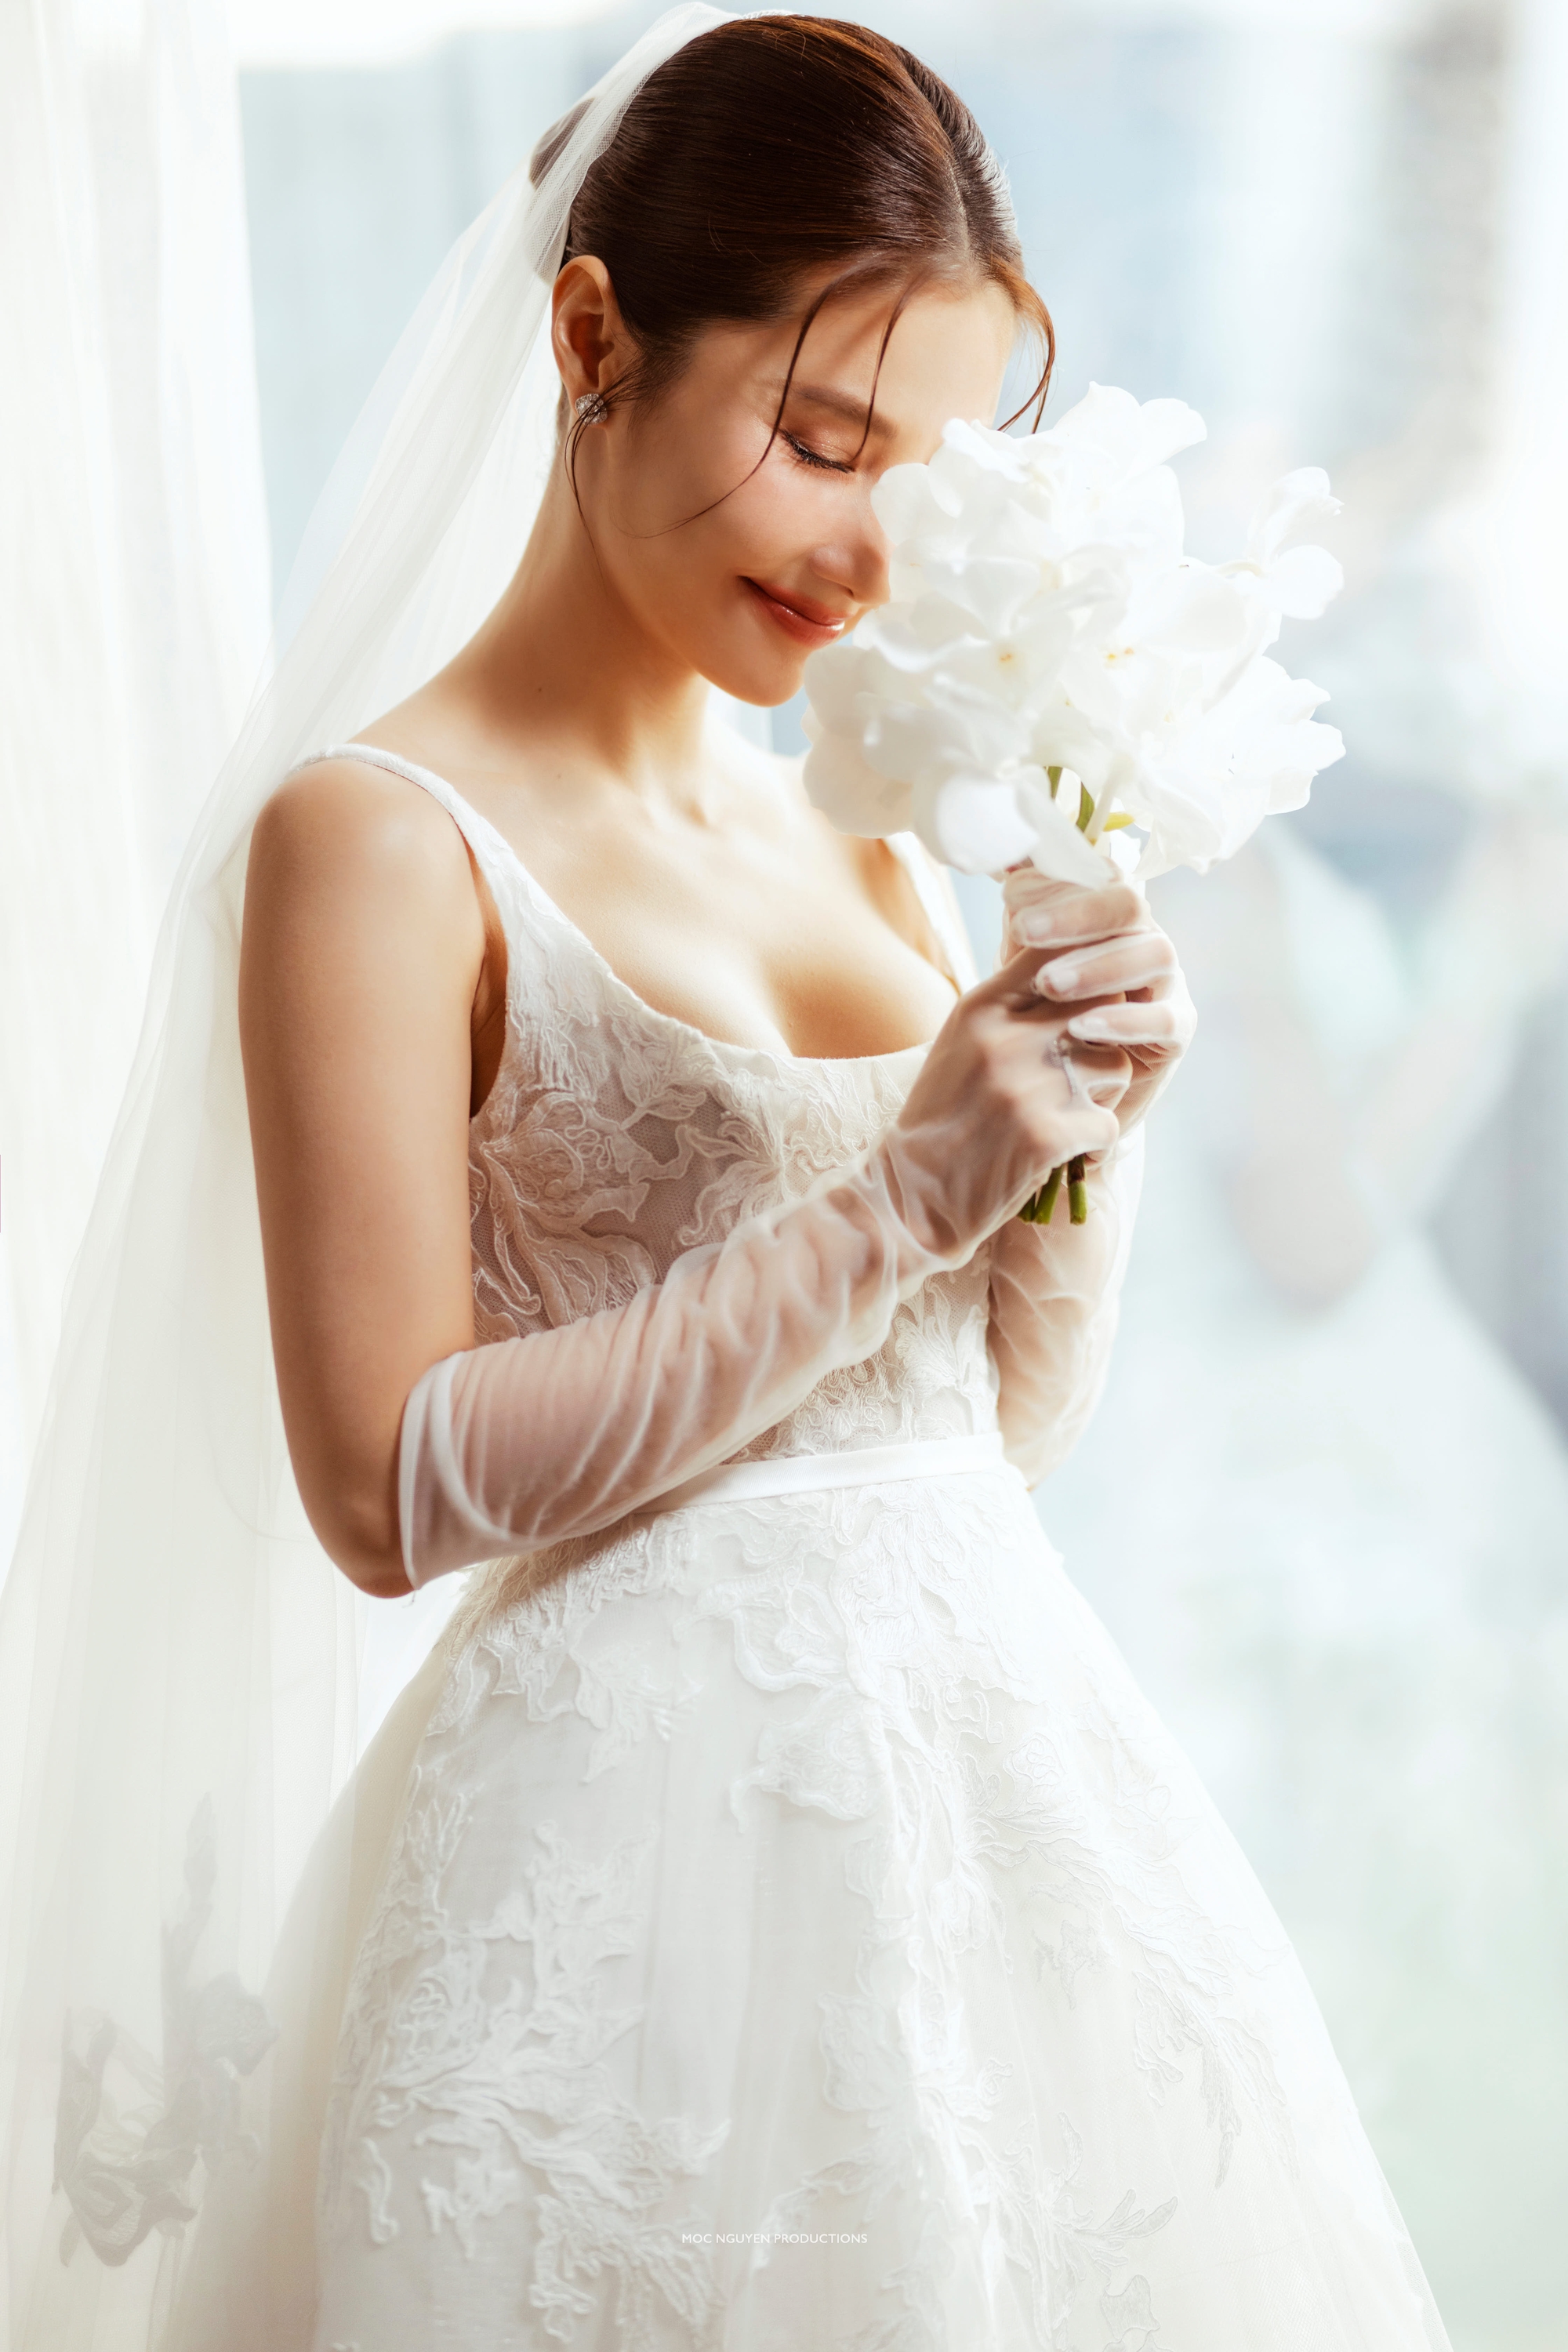 Gợi ý trang phục cho cô dâu chú rể để album ảnh cưới đẹp nhất